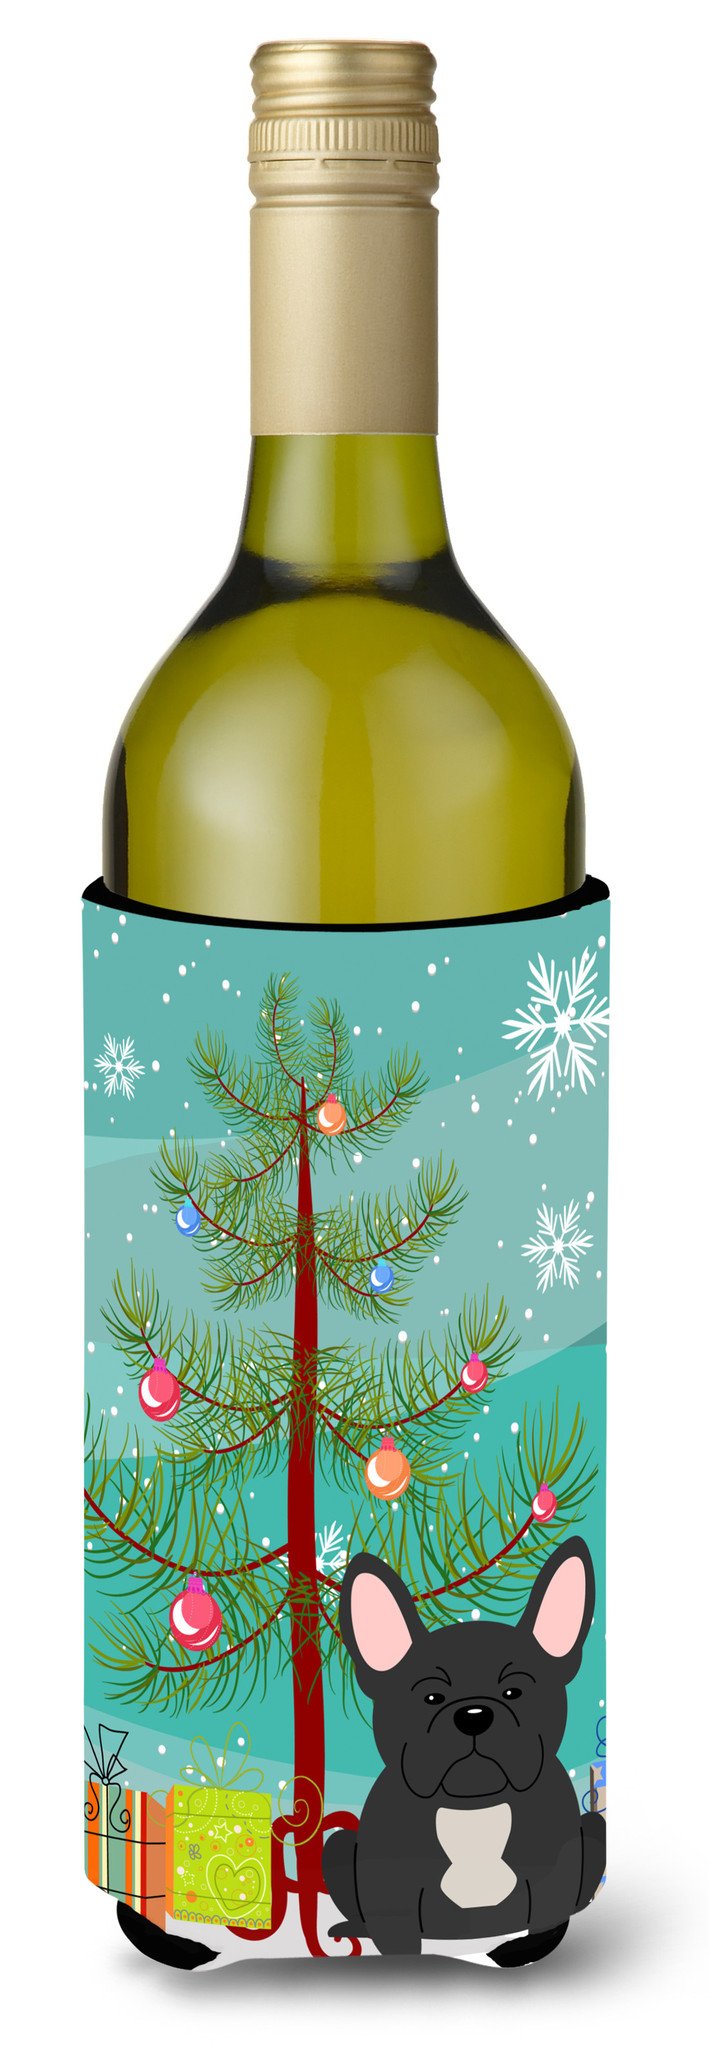 Merry Christmas Tree French Bulldog Black Wine Bottle Beverge Insulator Hugger BB4139LITERK by Caroline's Treasures